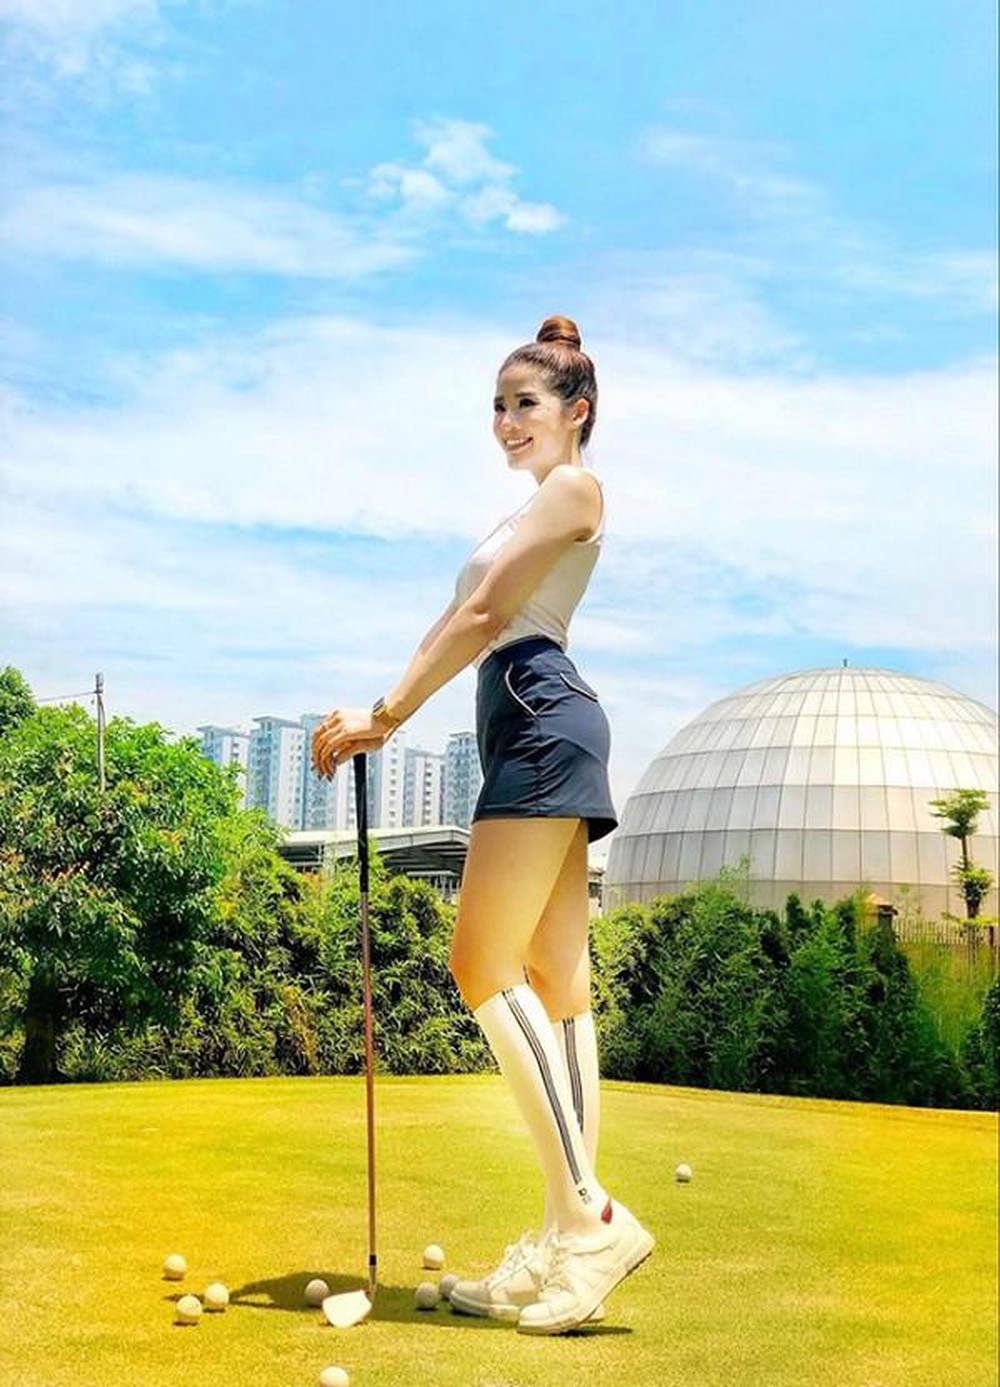 Mặc ngắn cũn, gợi cảm, người đẹp Việt biến sân golf thành sàn diễn